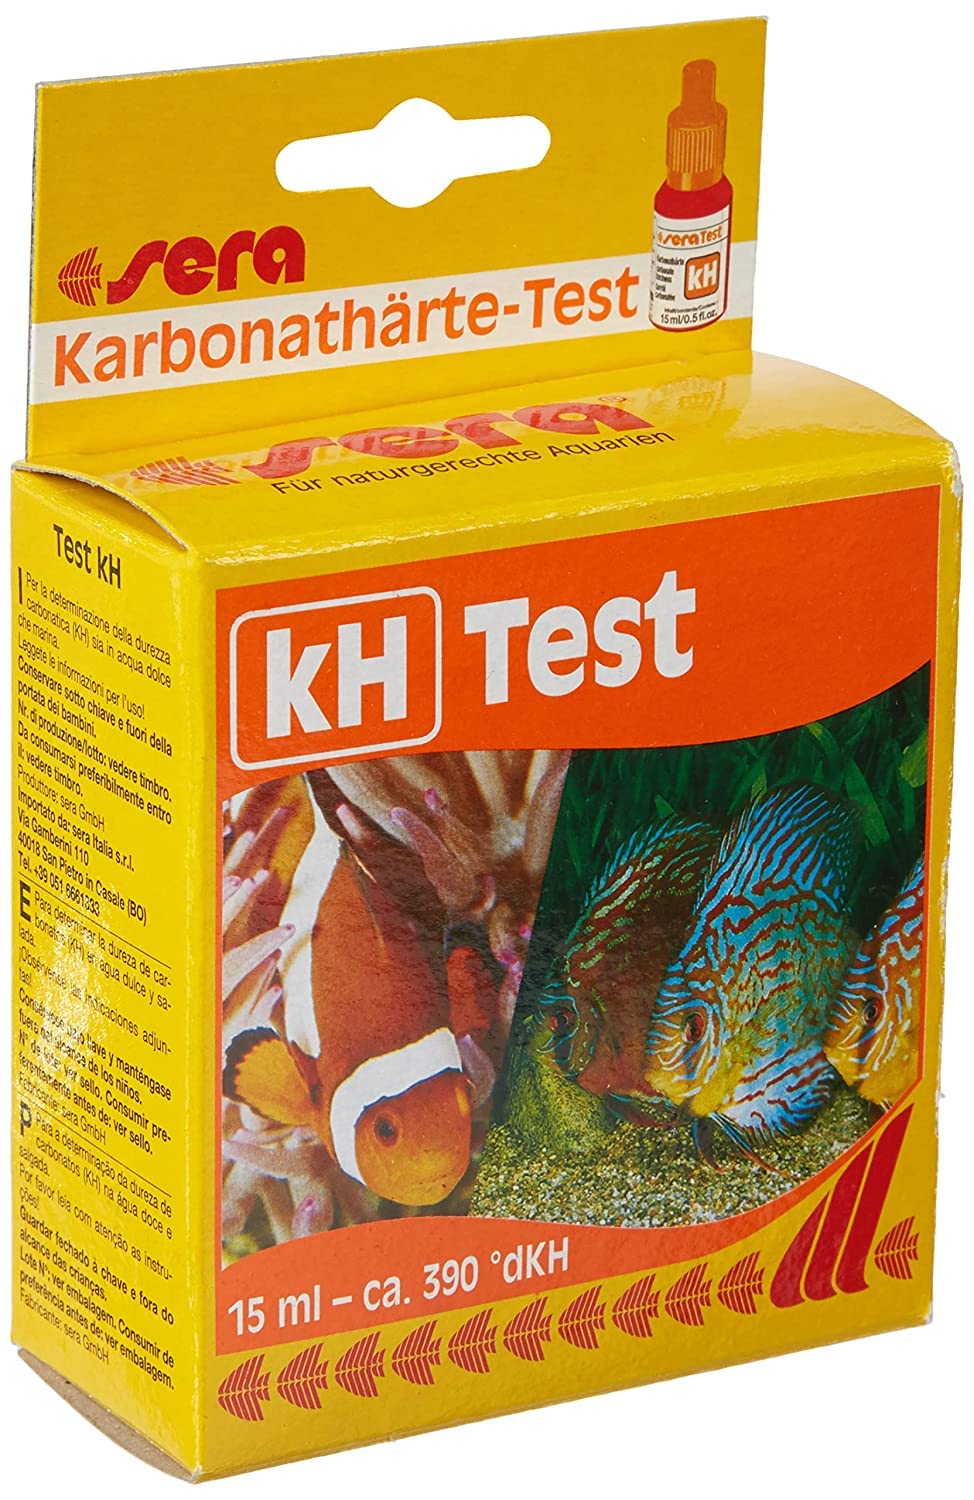 kH-Test Aquarium Test Kits: 15 ml, 0.5 fl.oz. by sera